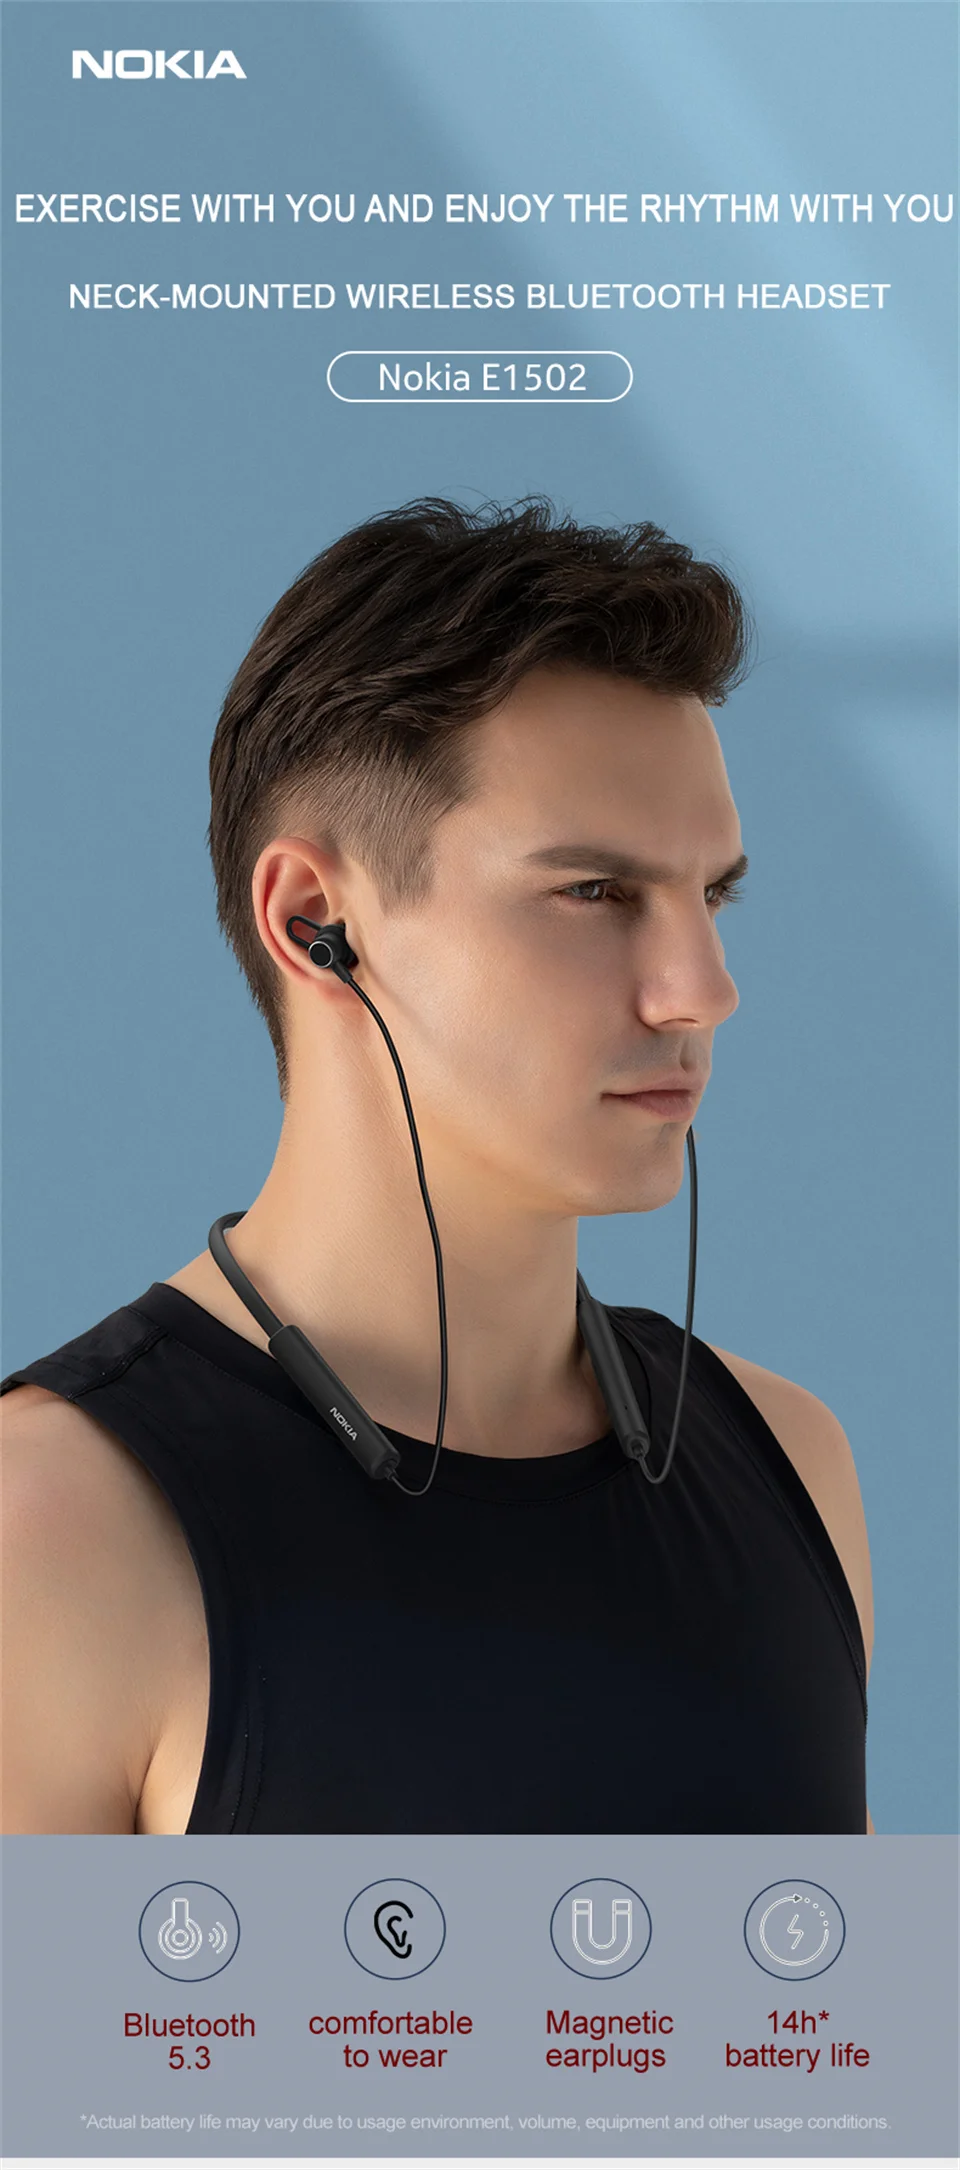 Ecouteur filaire Bluetooth - Nokia essential E1502 - Microphone